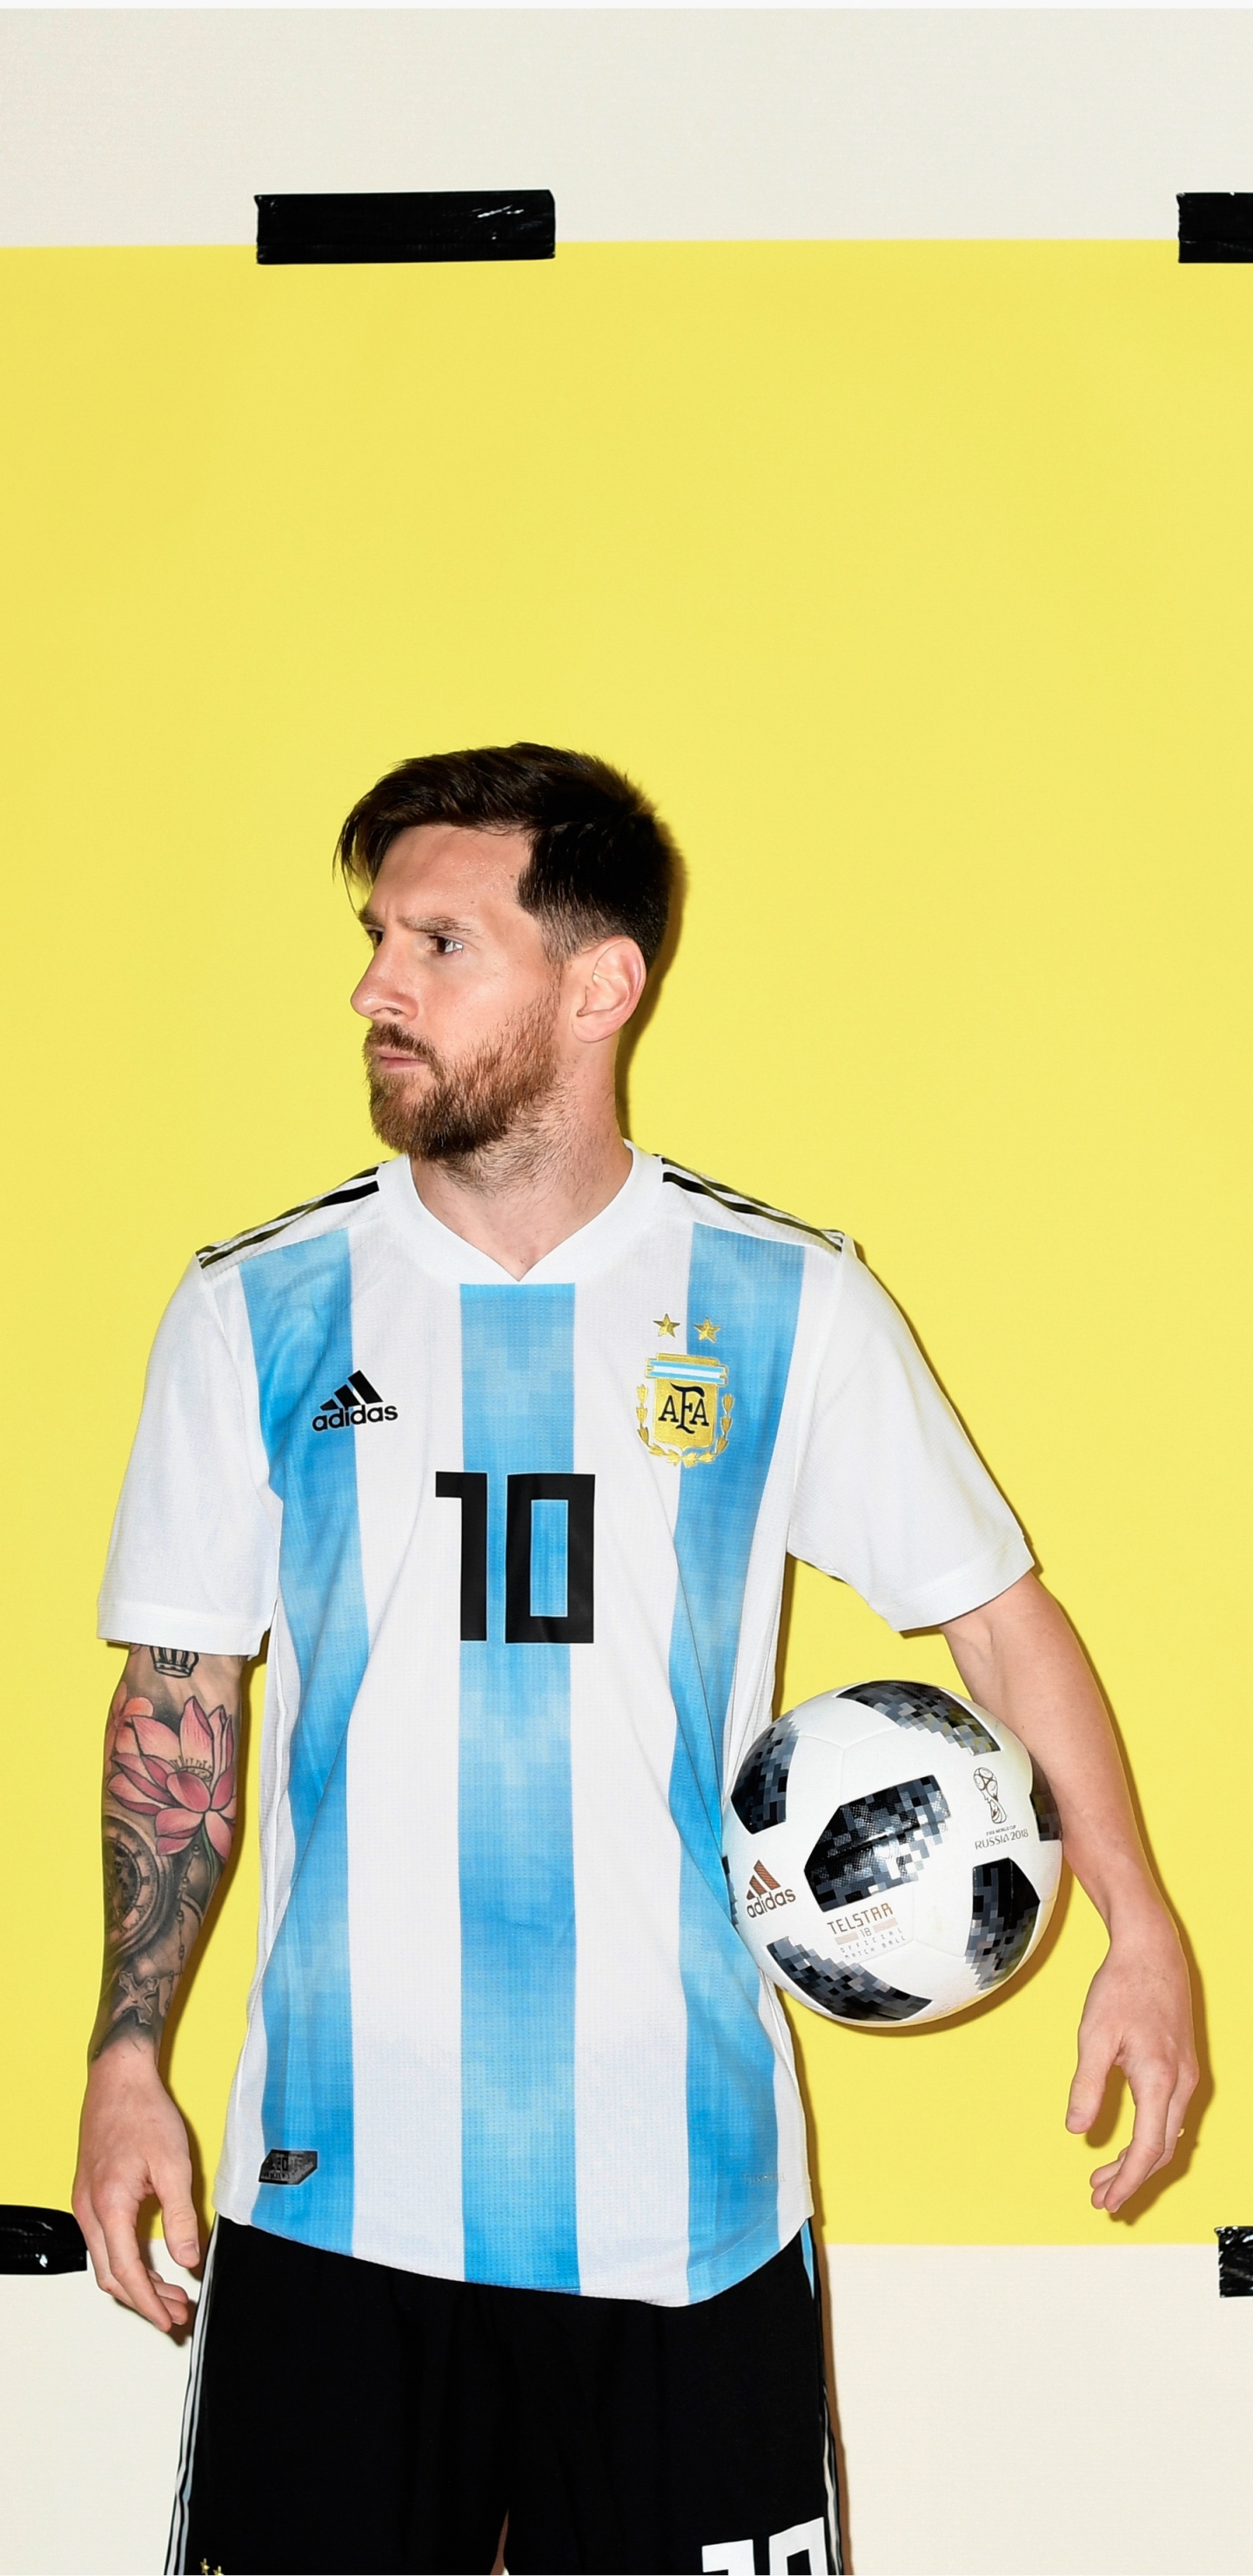 PCデスクトップにスポーツ, サッカー, ライオネル・メッシ, アルゼンチン人画像を無料でダウンロード